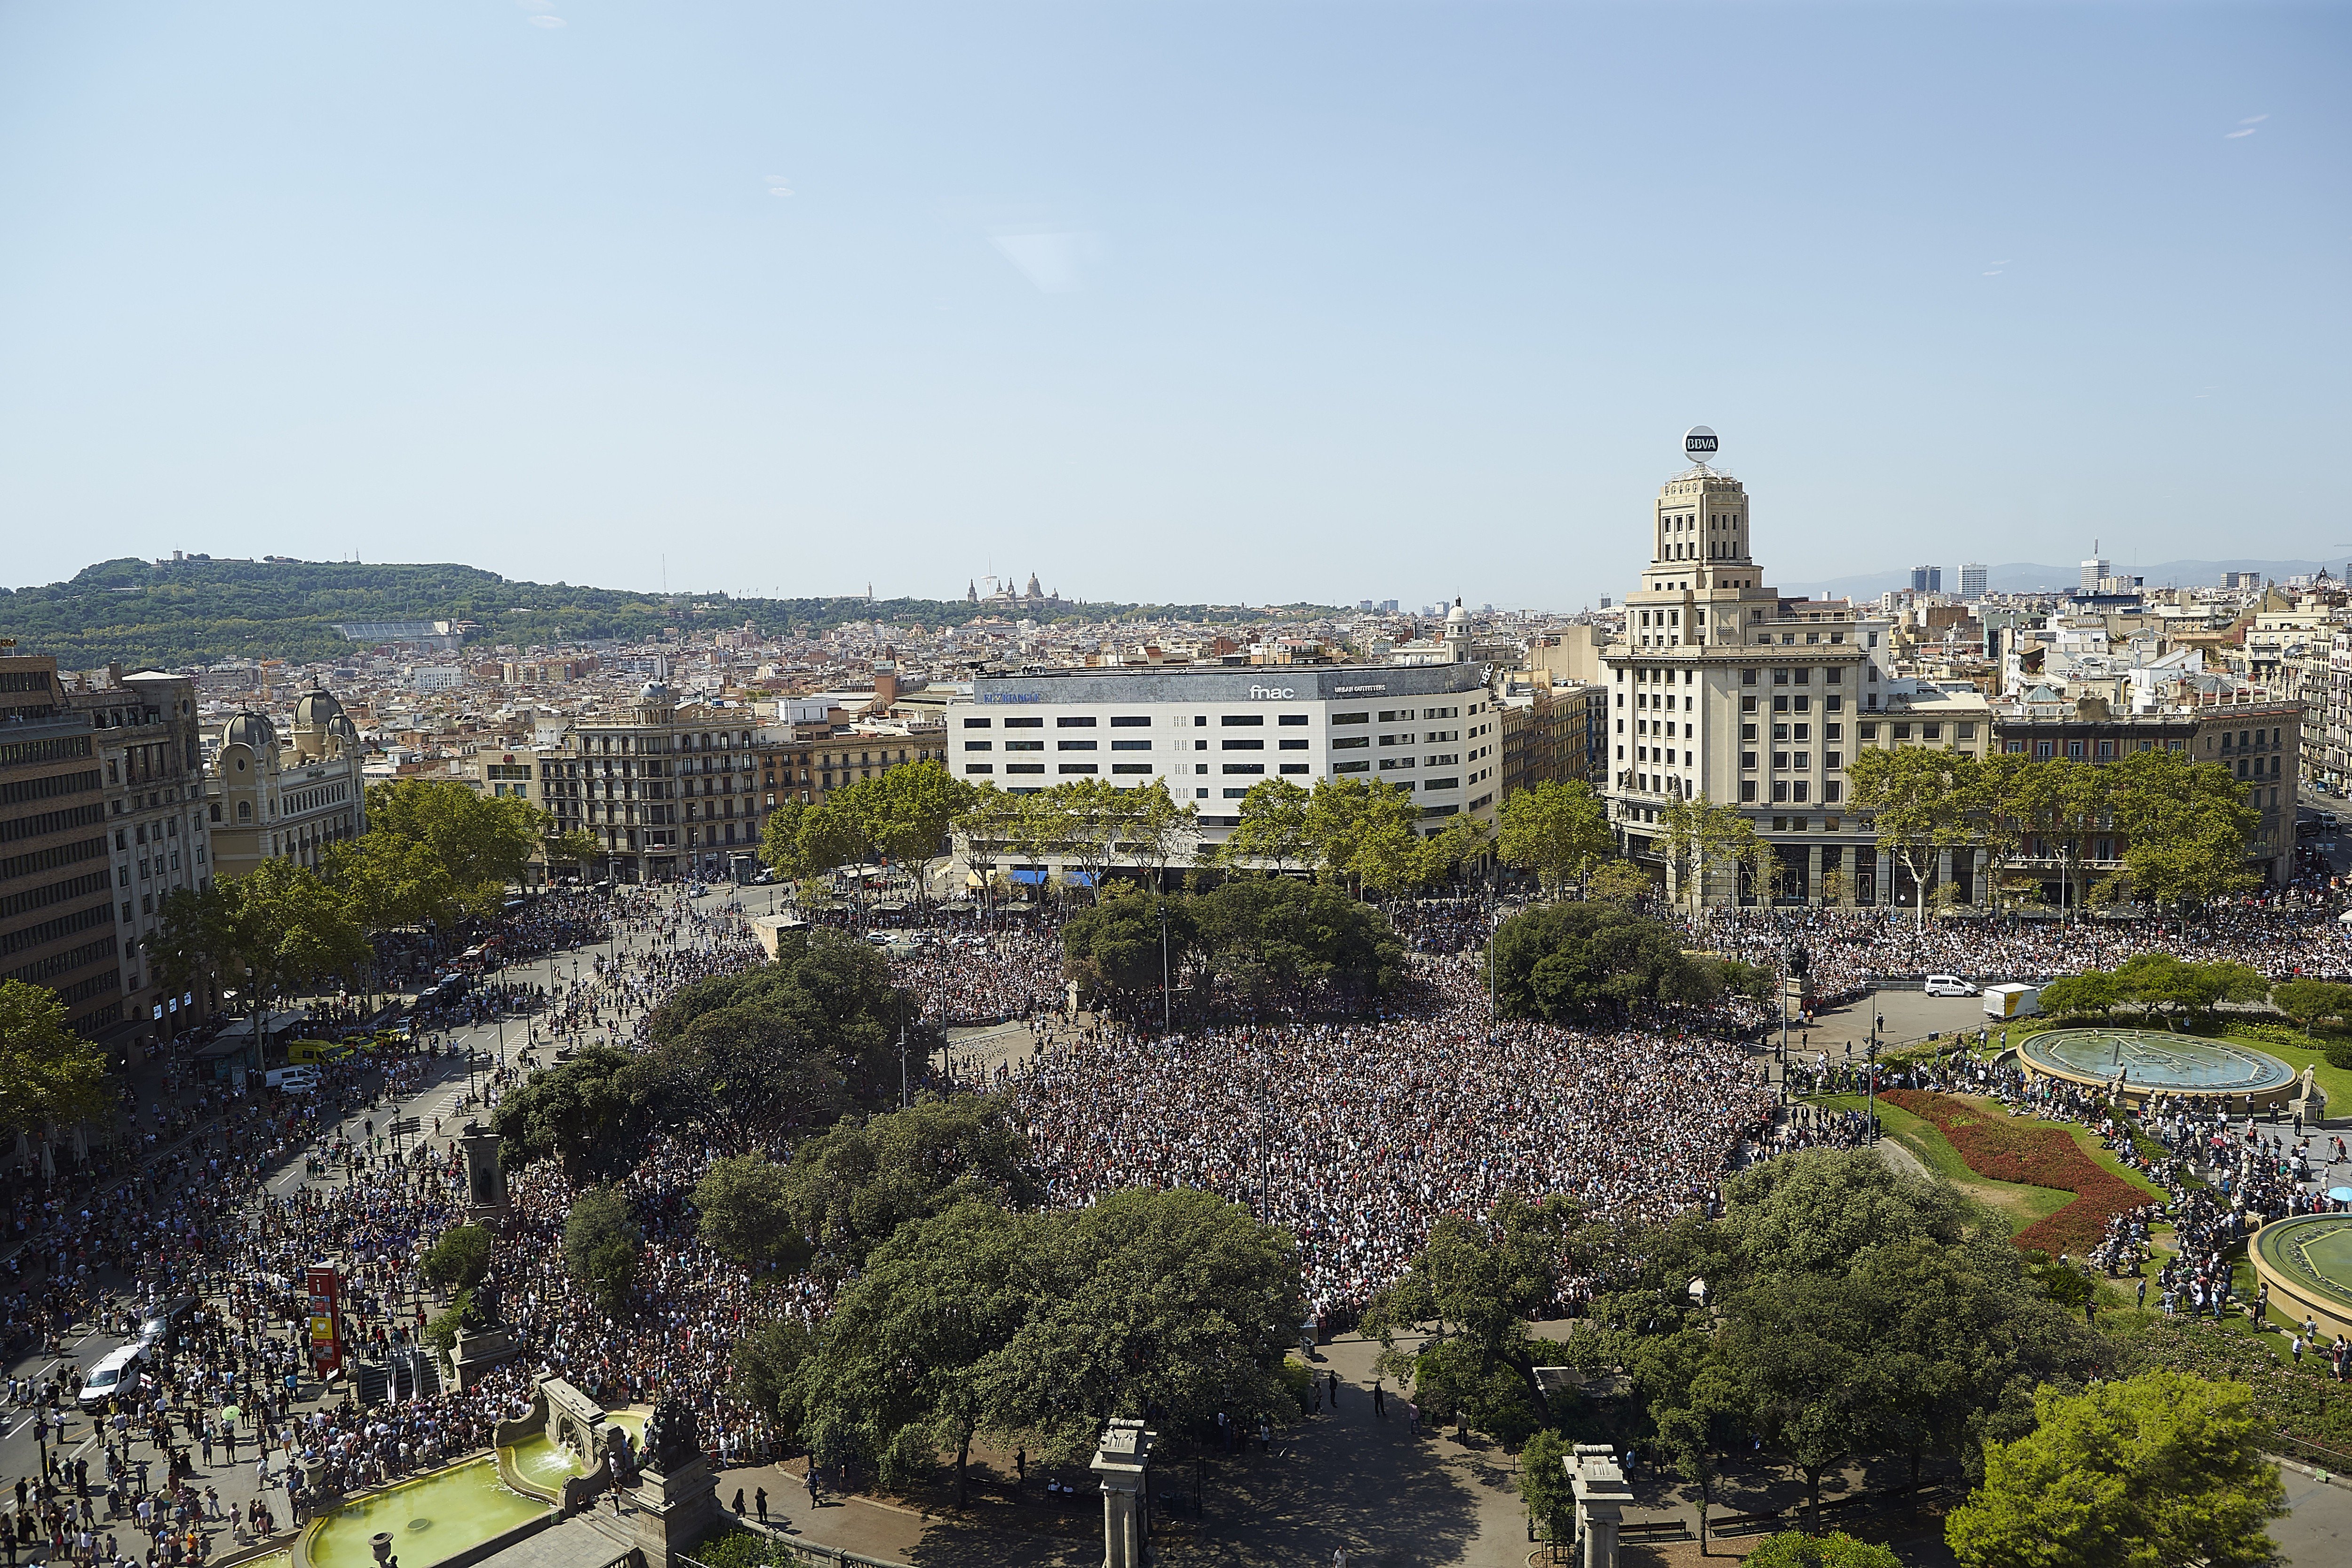 La Barcelona sense por envia avui al món un missatge de pau després del 17-A